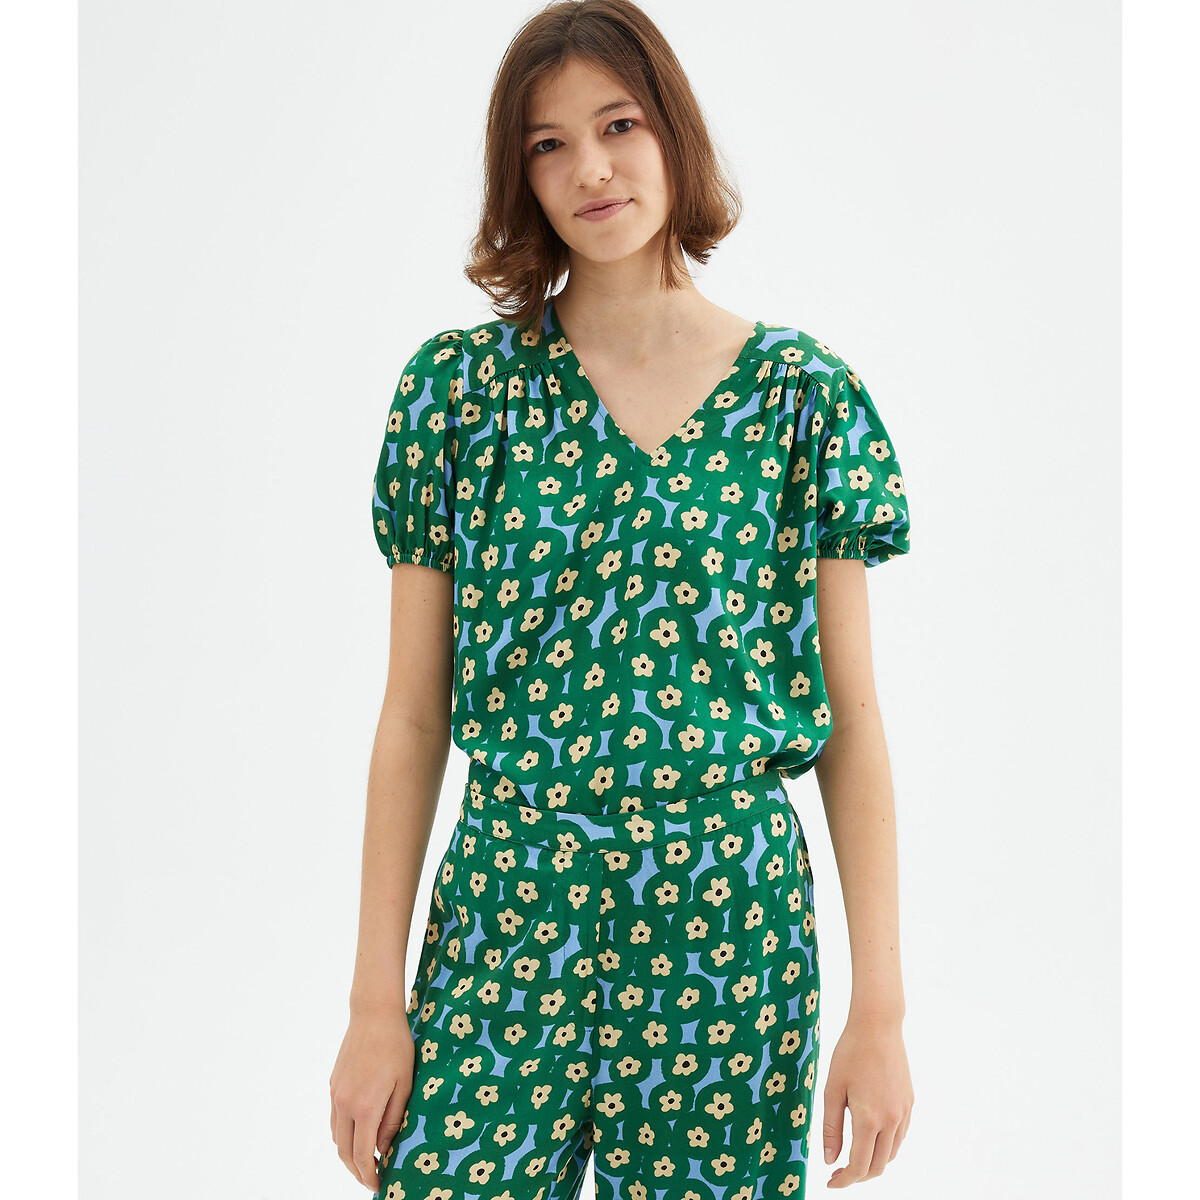 Блузка С короткими рукавами и цветочным принтом L зеленый LaRedoute, размер L - фото 1